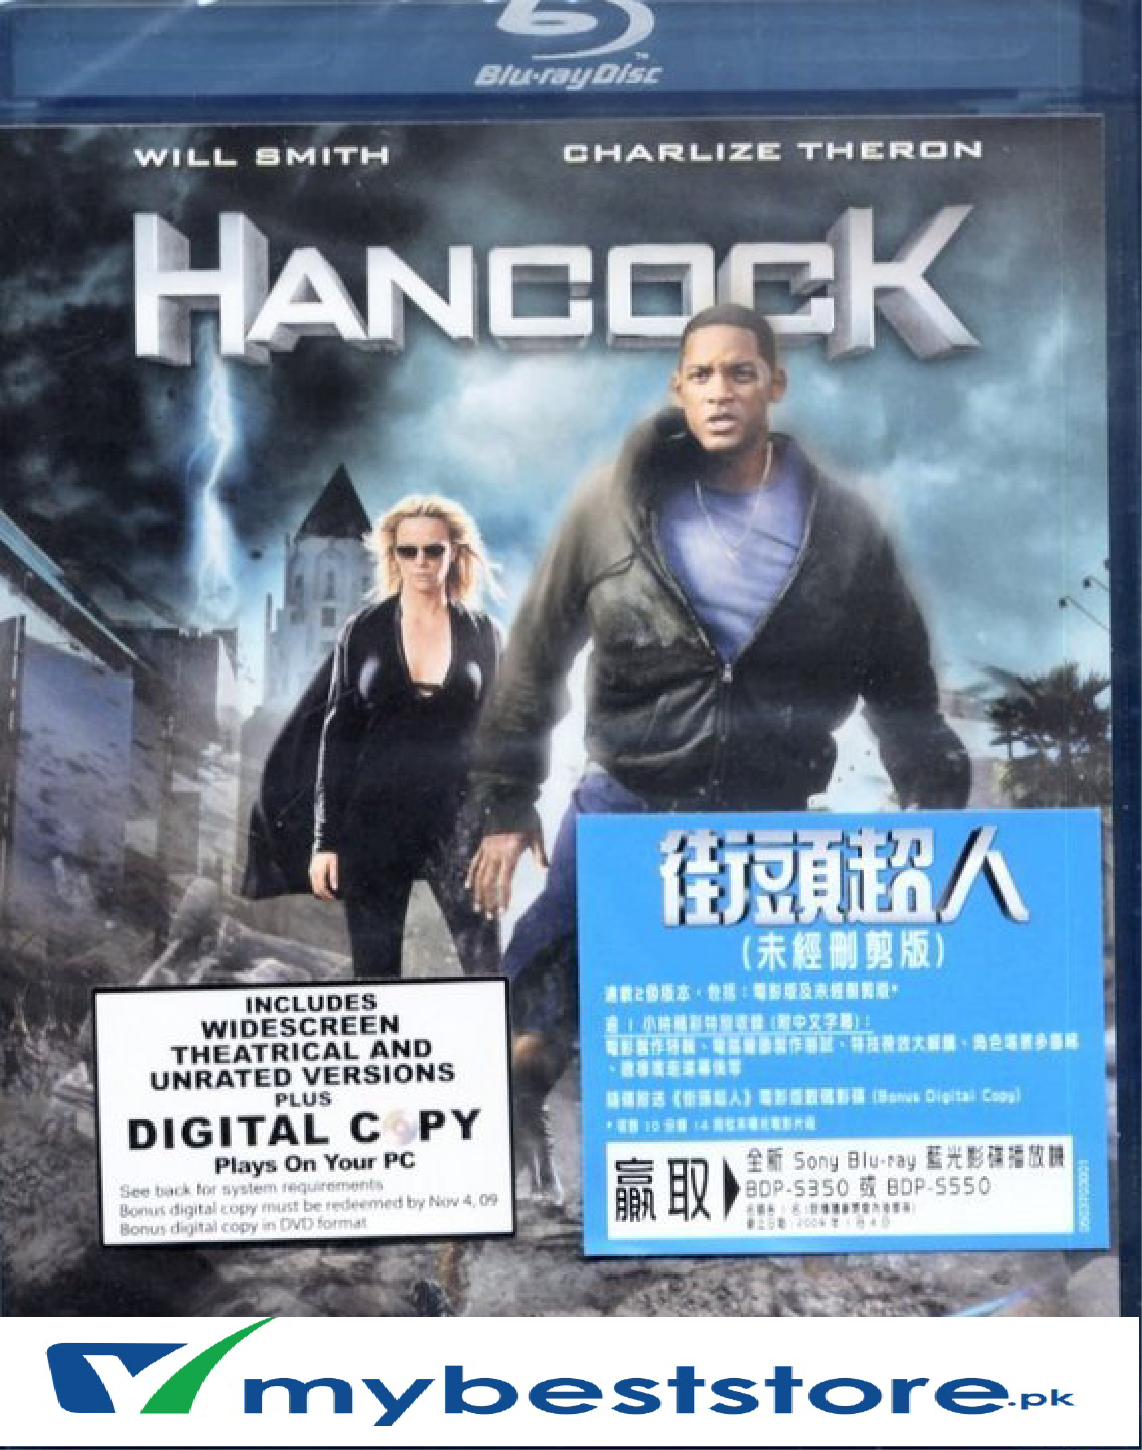 Hancock (Blu-ray) (Hong Kong Version)